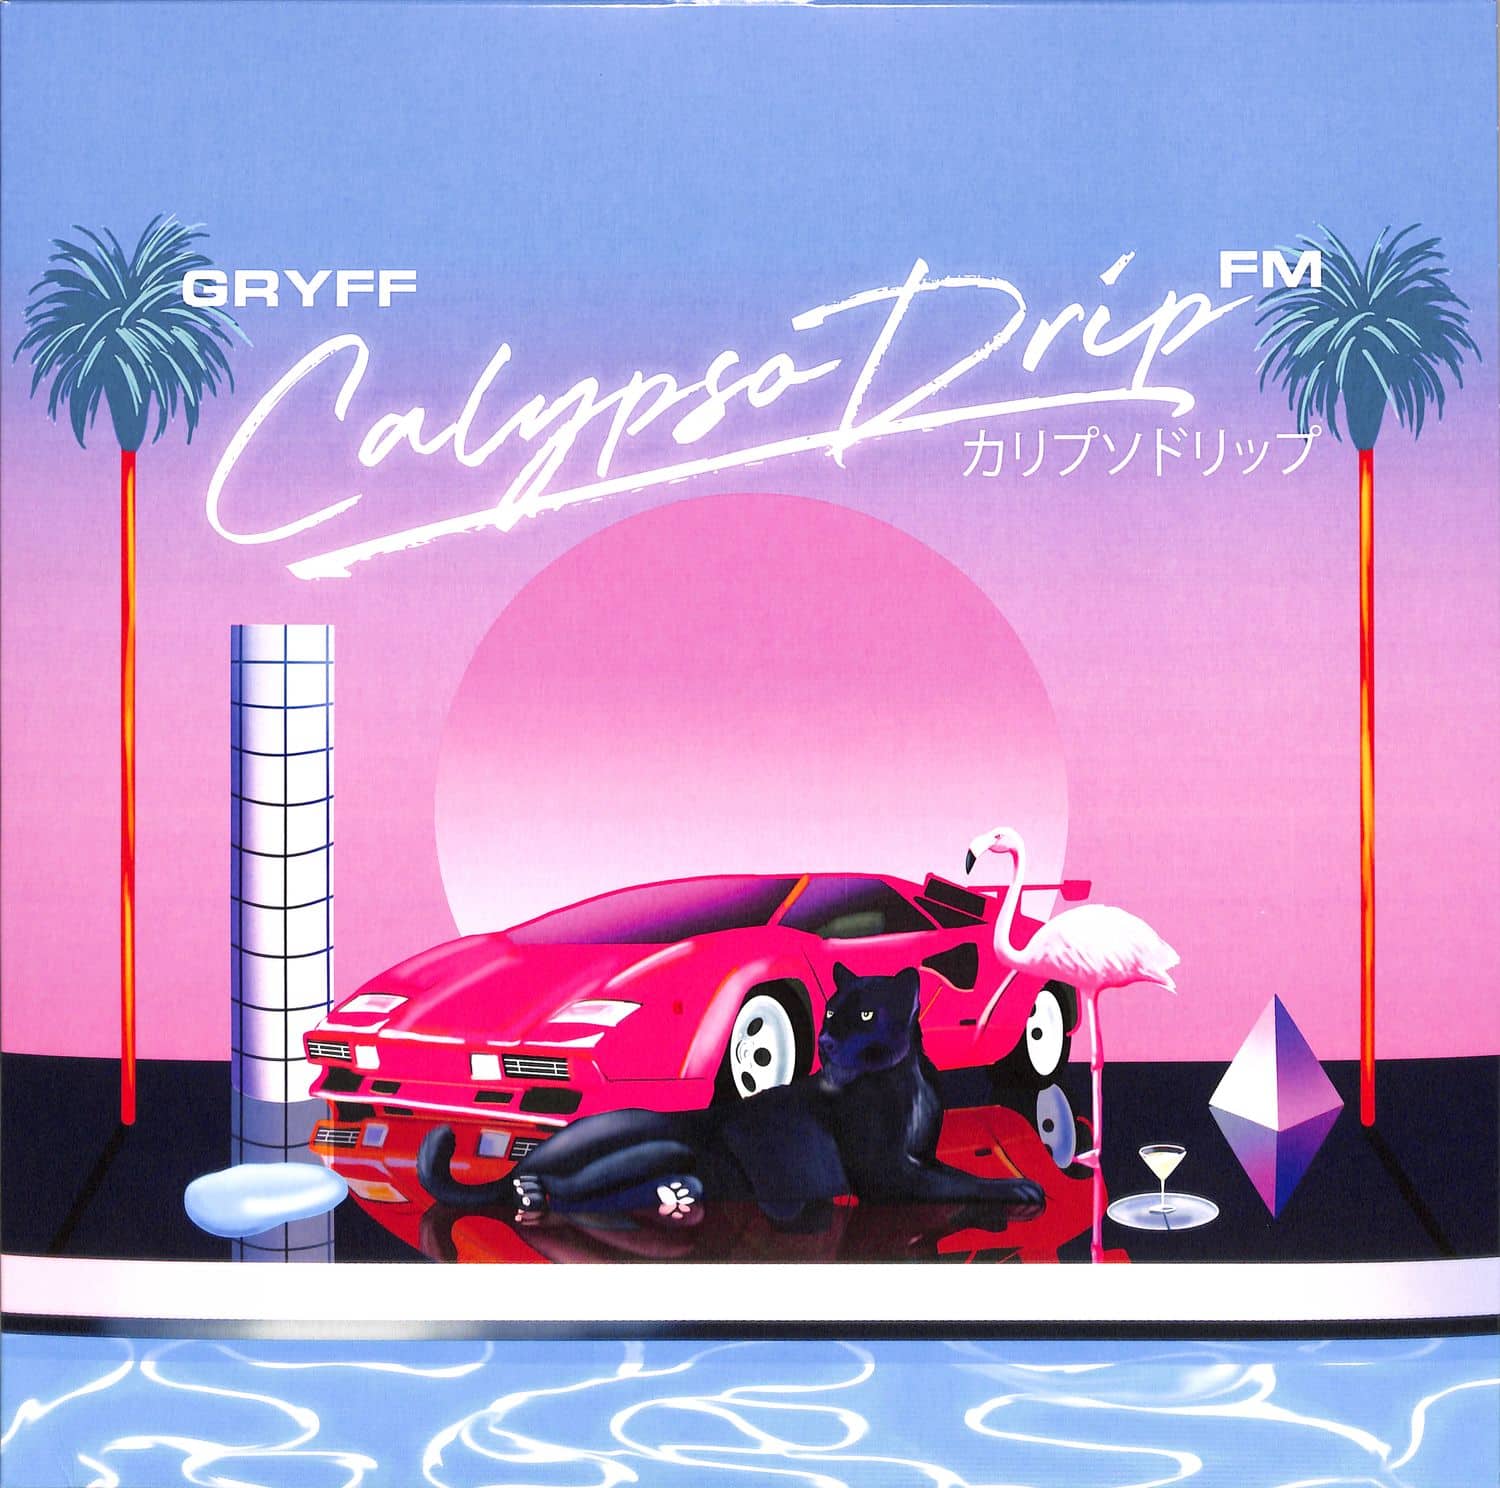 Gryff - CALYPSO DRIP FM 